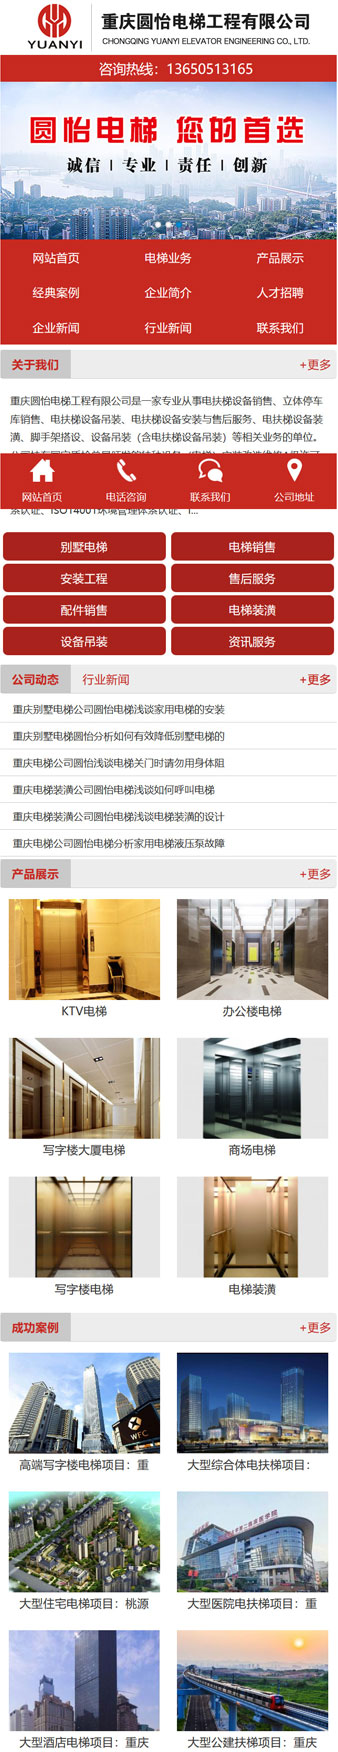 重庆圆怡电梯工程有限公司网站建设案例